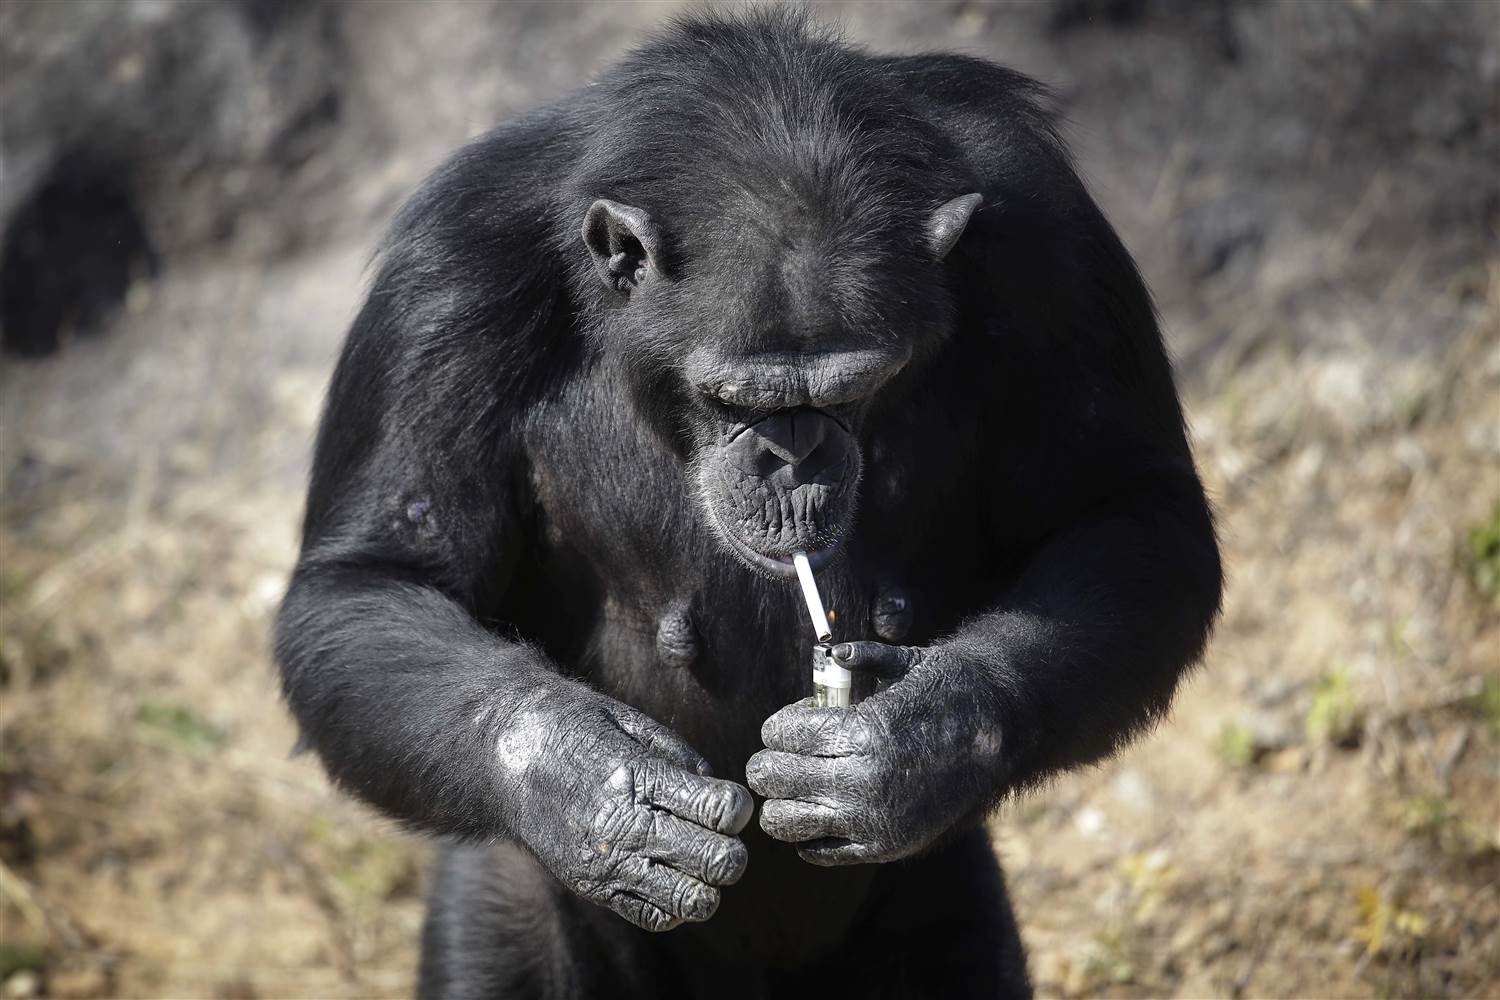  ‘Azalea’, la chimpancé obligada a ser adicta a fumar